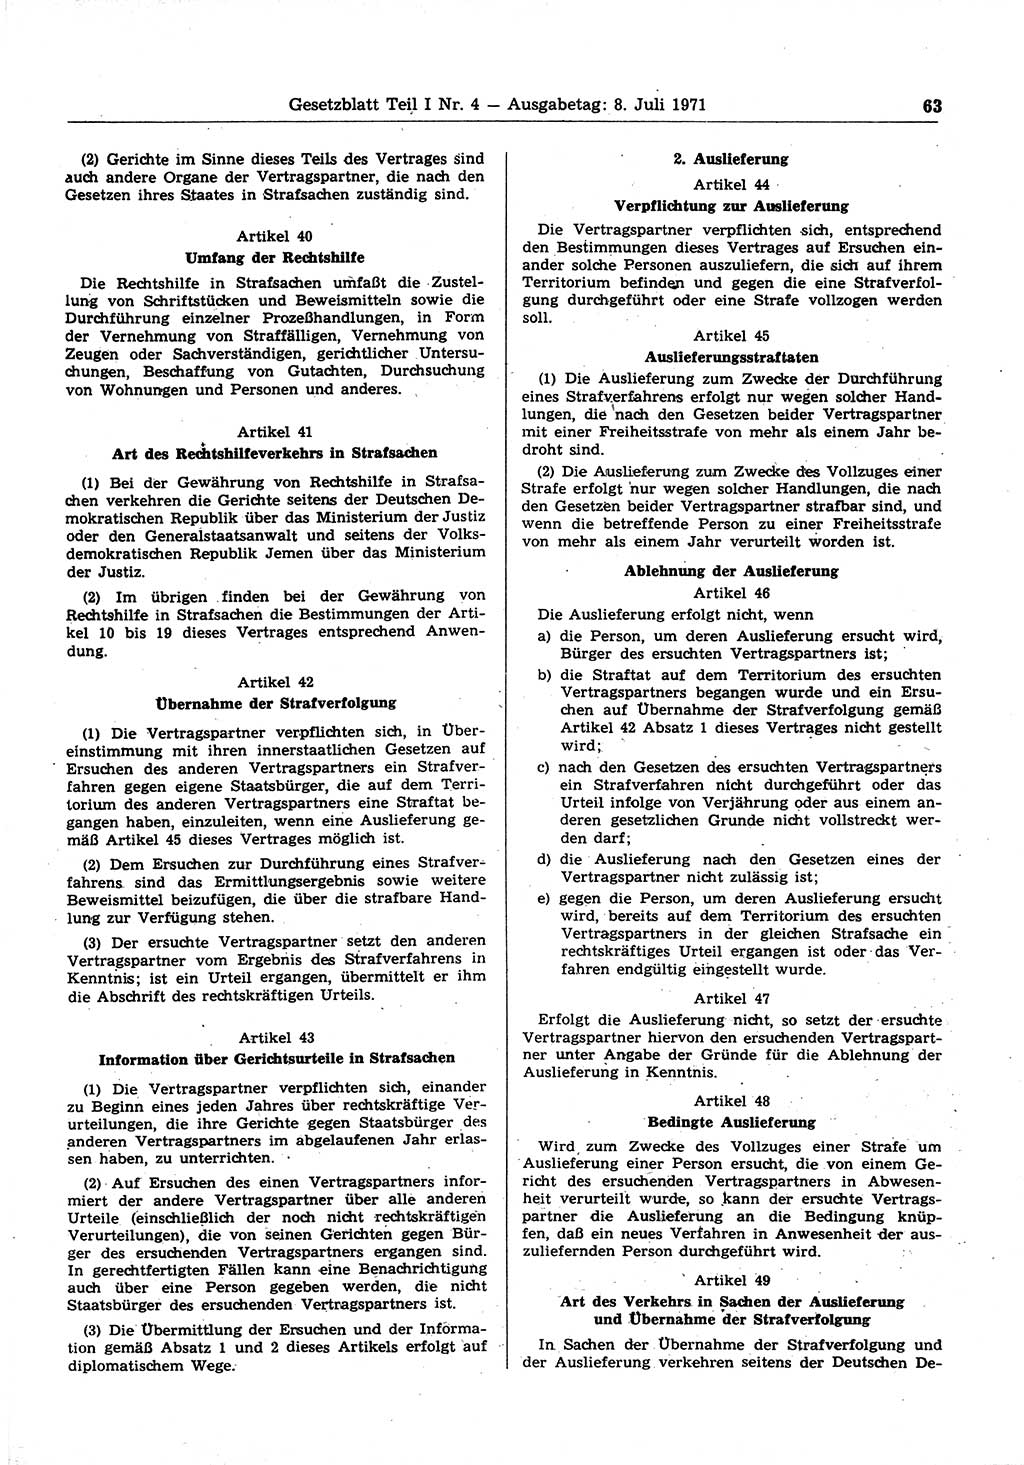 Gesetzblatt (GBl.) der Deutschen Demokratischen Republik (DDR) Teil Ⅰ 1971, Seite 63 (GBl. DDR Ⅰ 1971, S. 63)